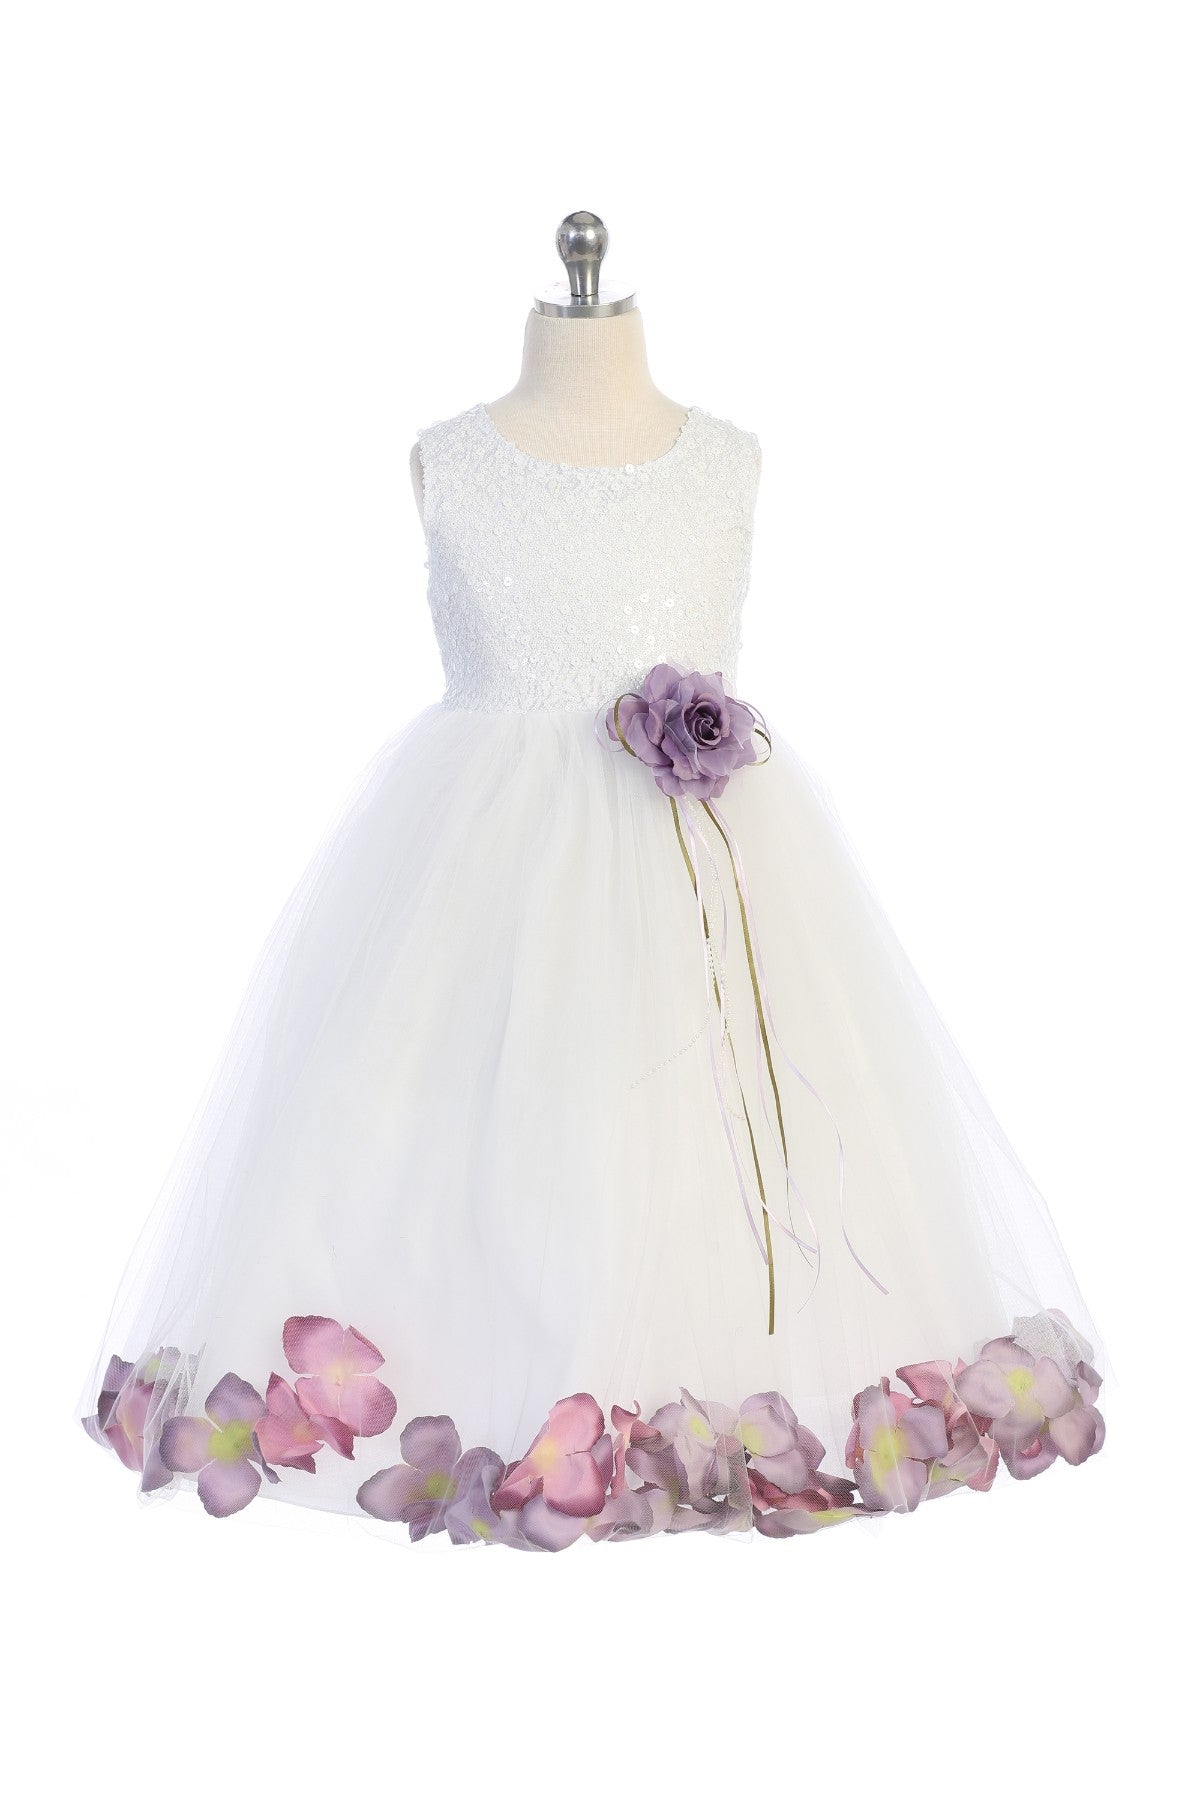 160C Sequin Top Flower Petal Girls Dress (2 of 2)